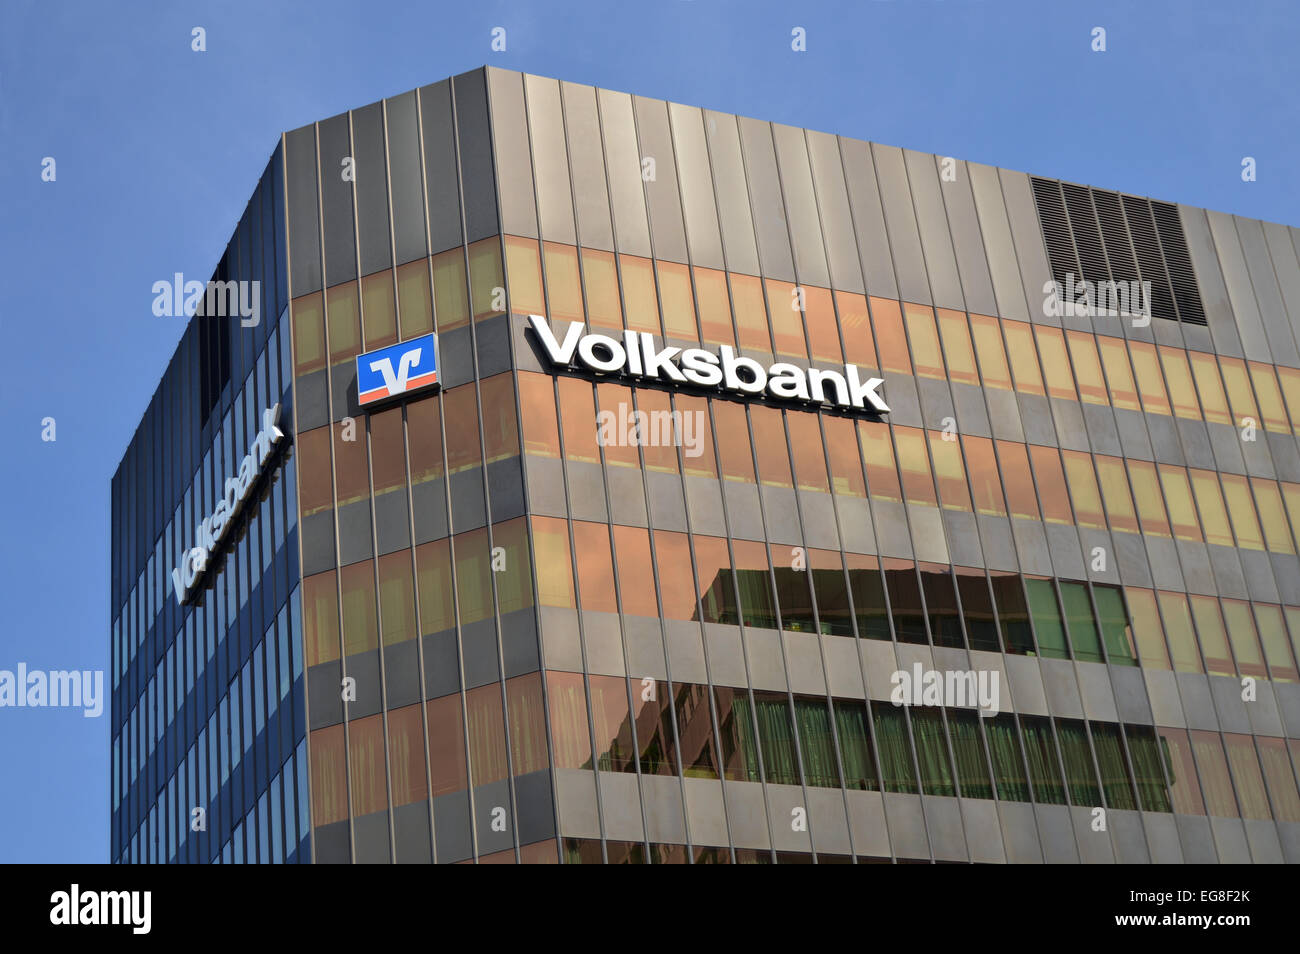 FREIBURG, Germania, Agosto 2012 - Costruzione di Volksbank, un tedesco di conglomerati finanziari indipendenti di banche popolari locali Foto Stock